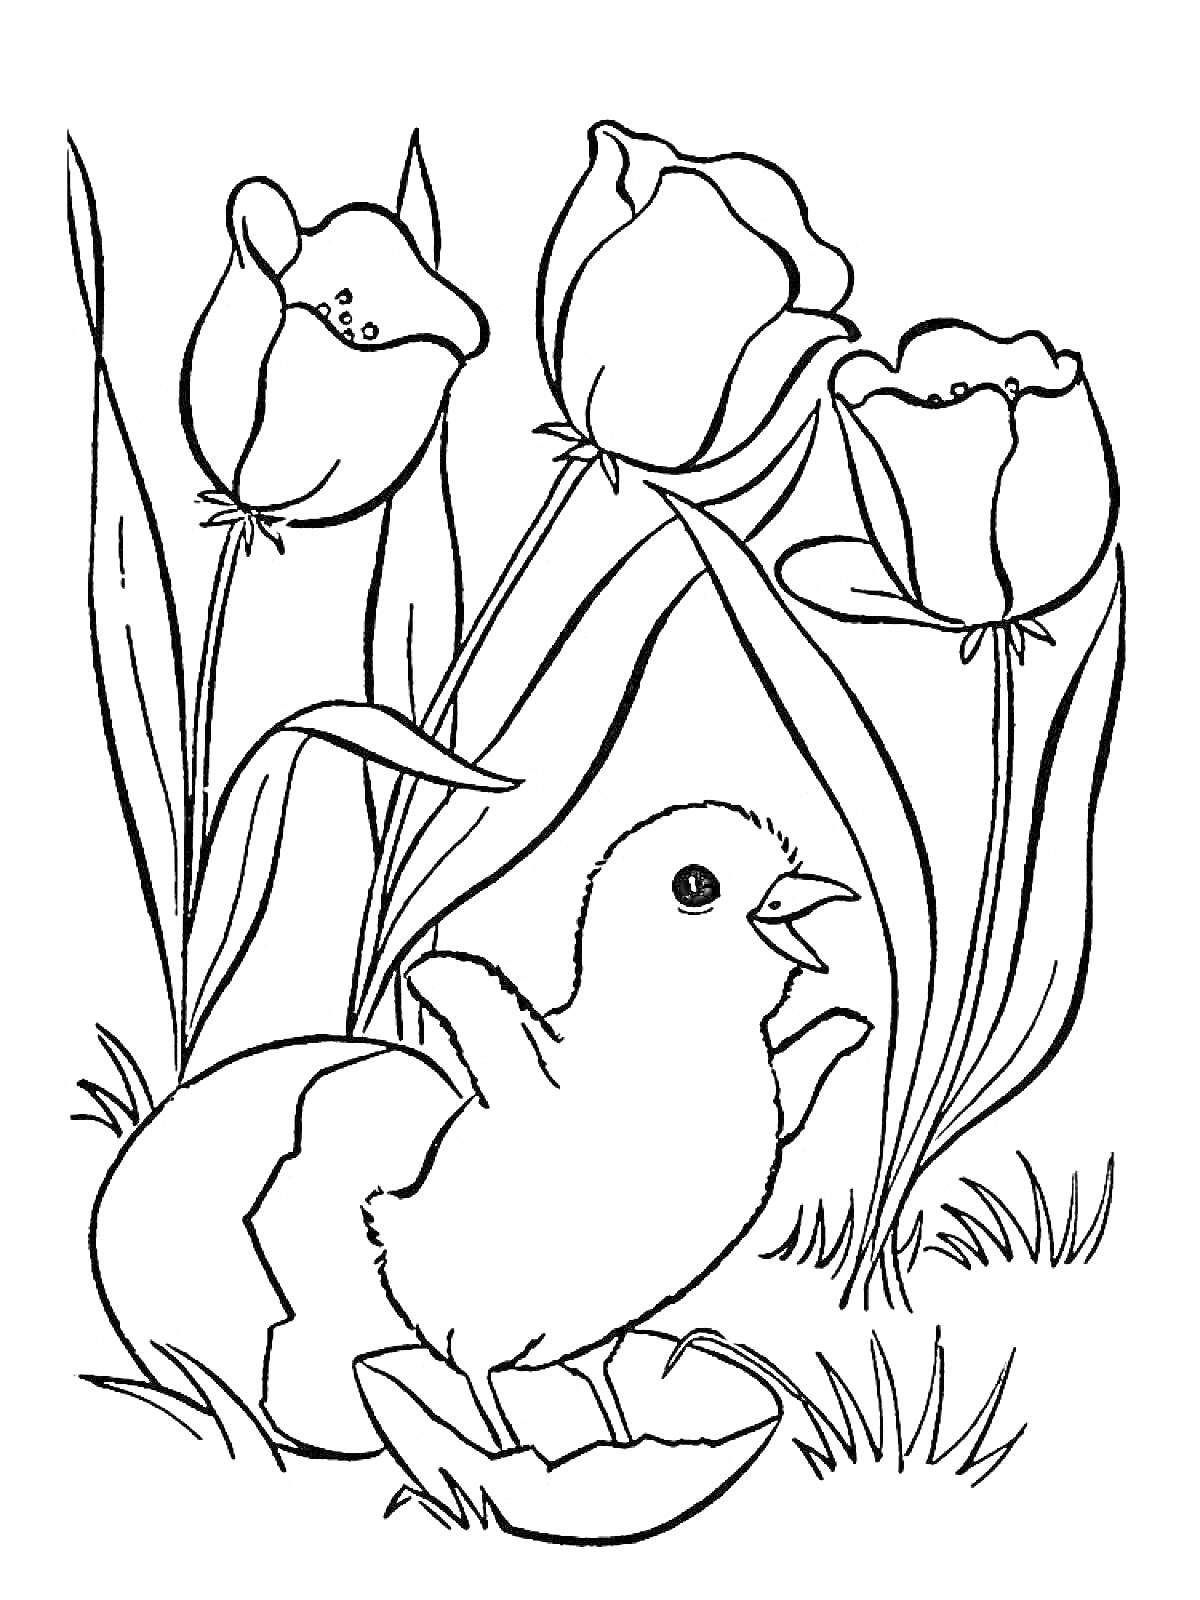 Раскраска Цыпленок в скорлупе на фоне тюльпанов